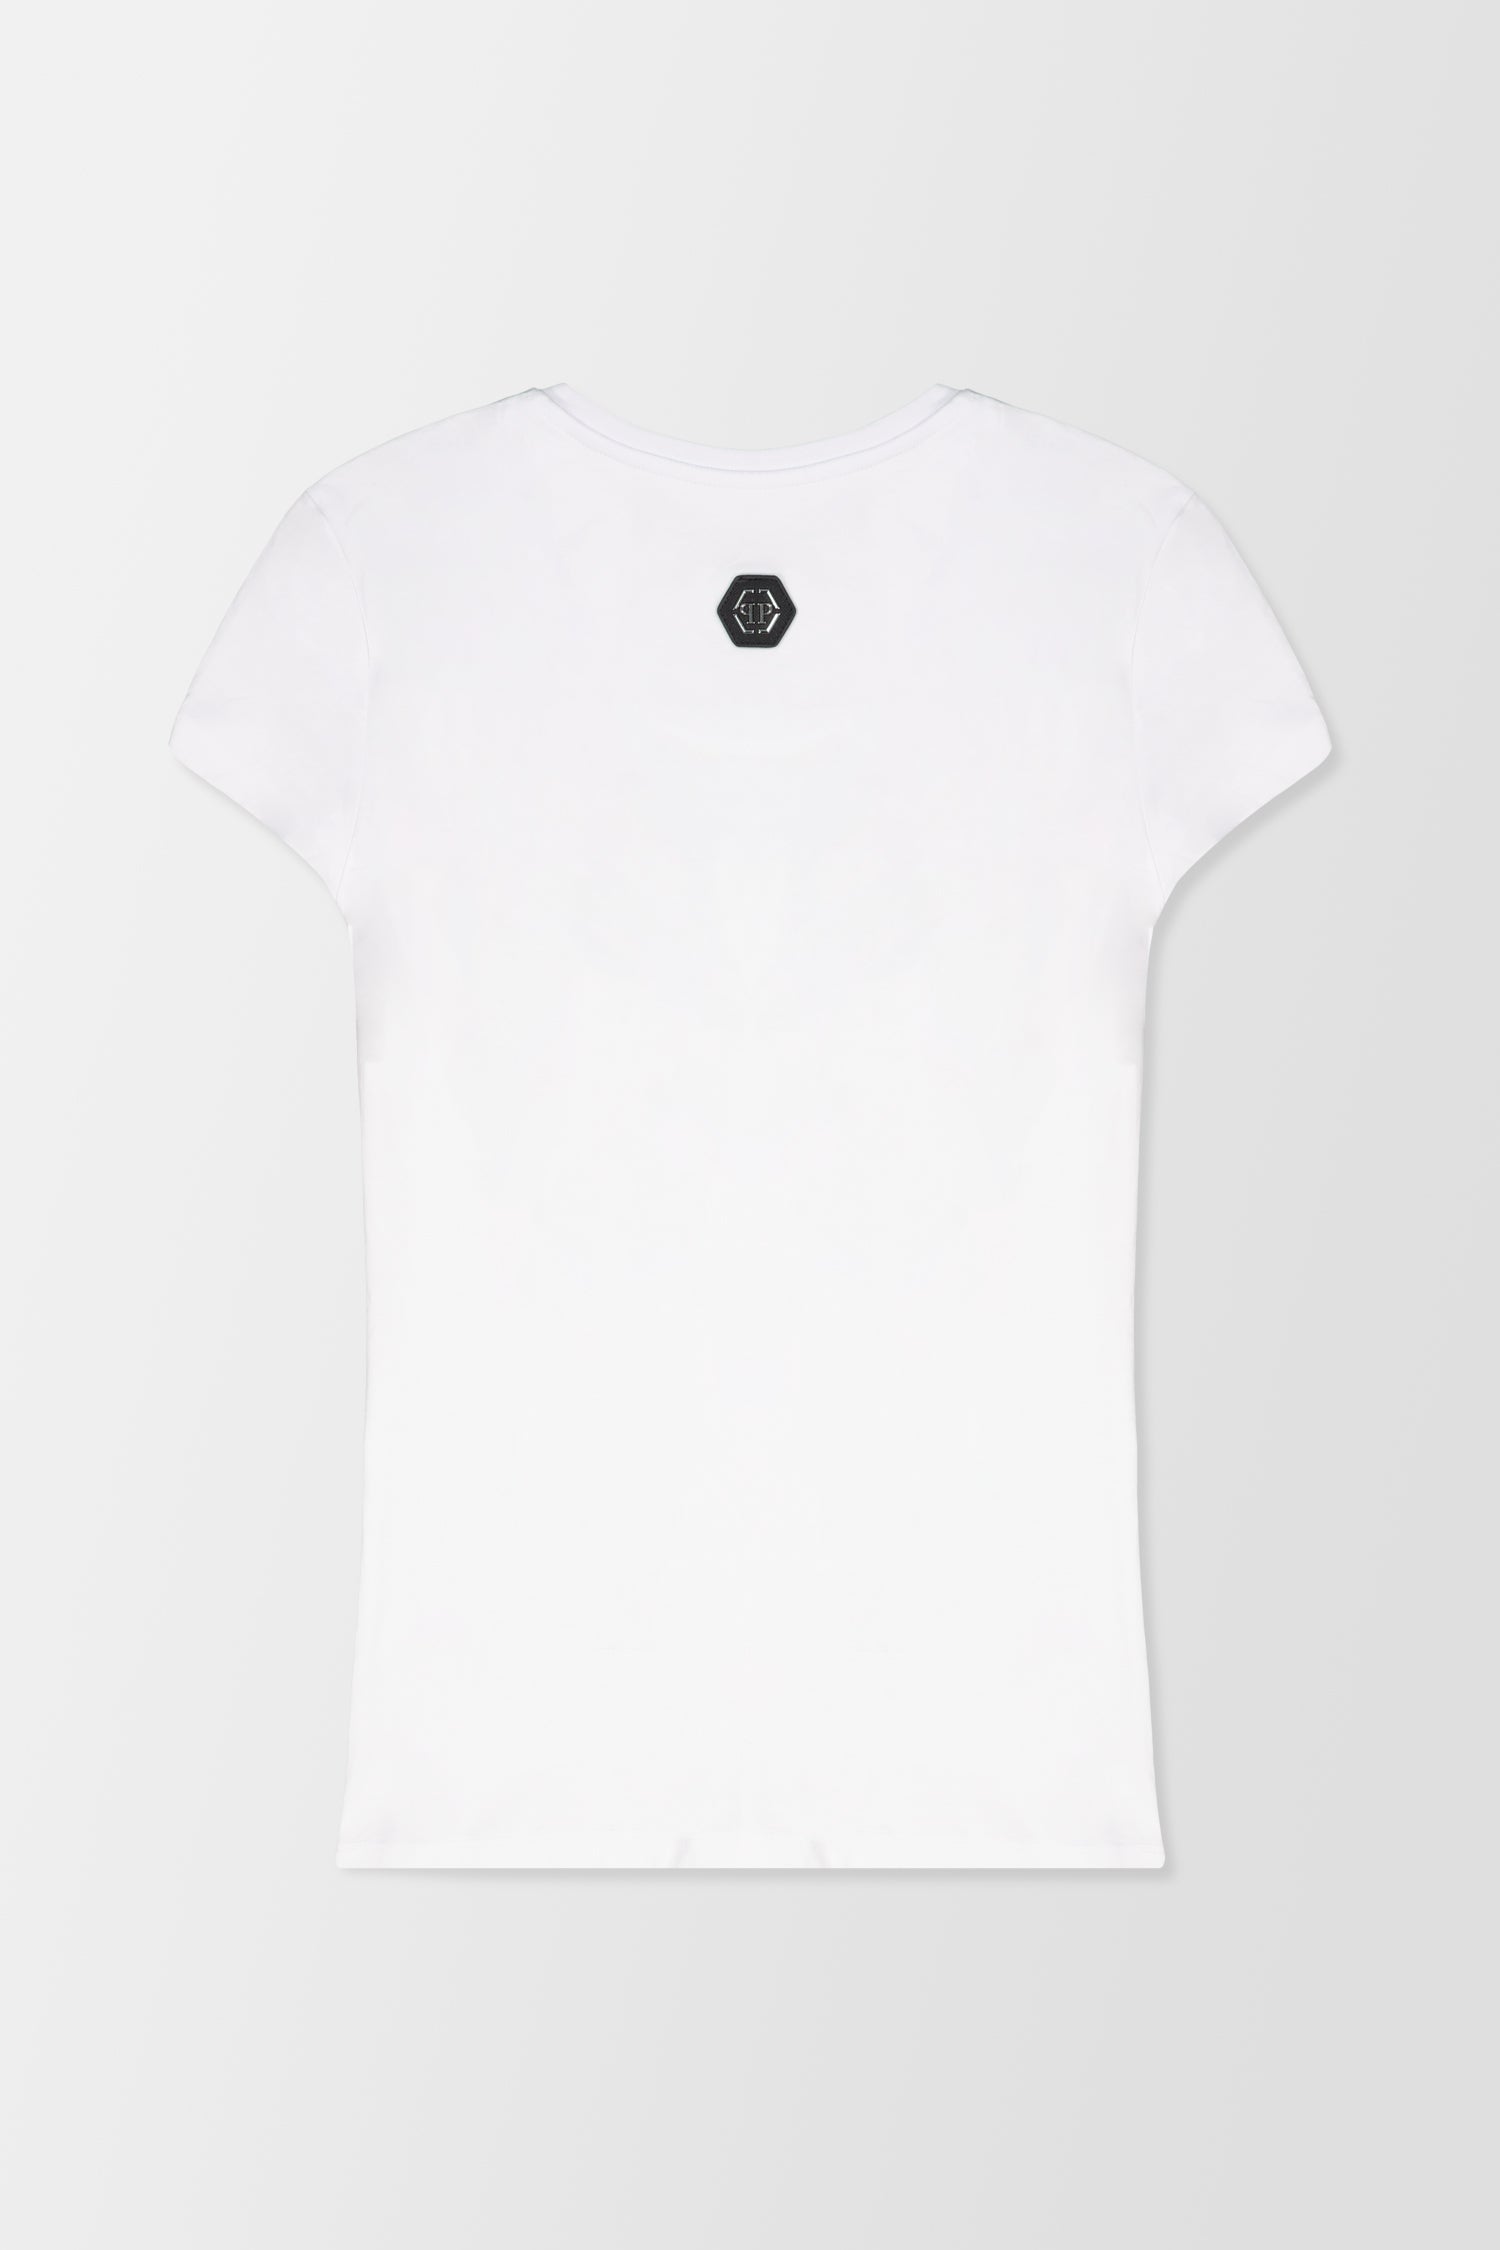 Philipp Plein White Round Neck SS Flowers T-Shirt